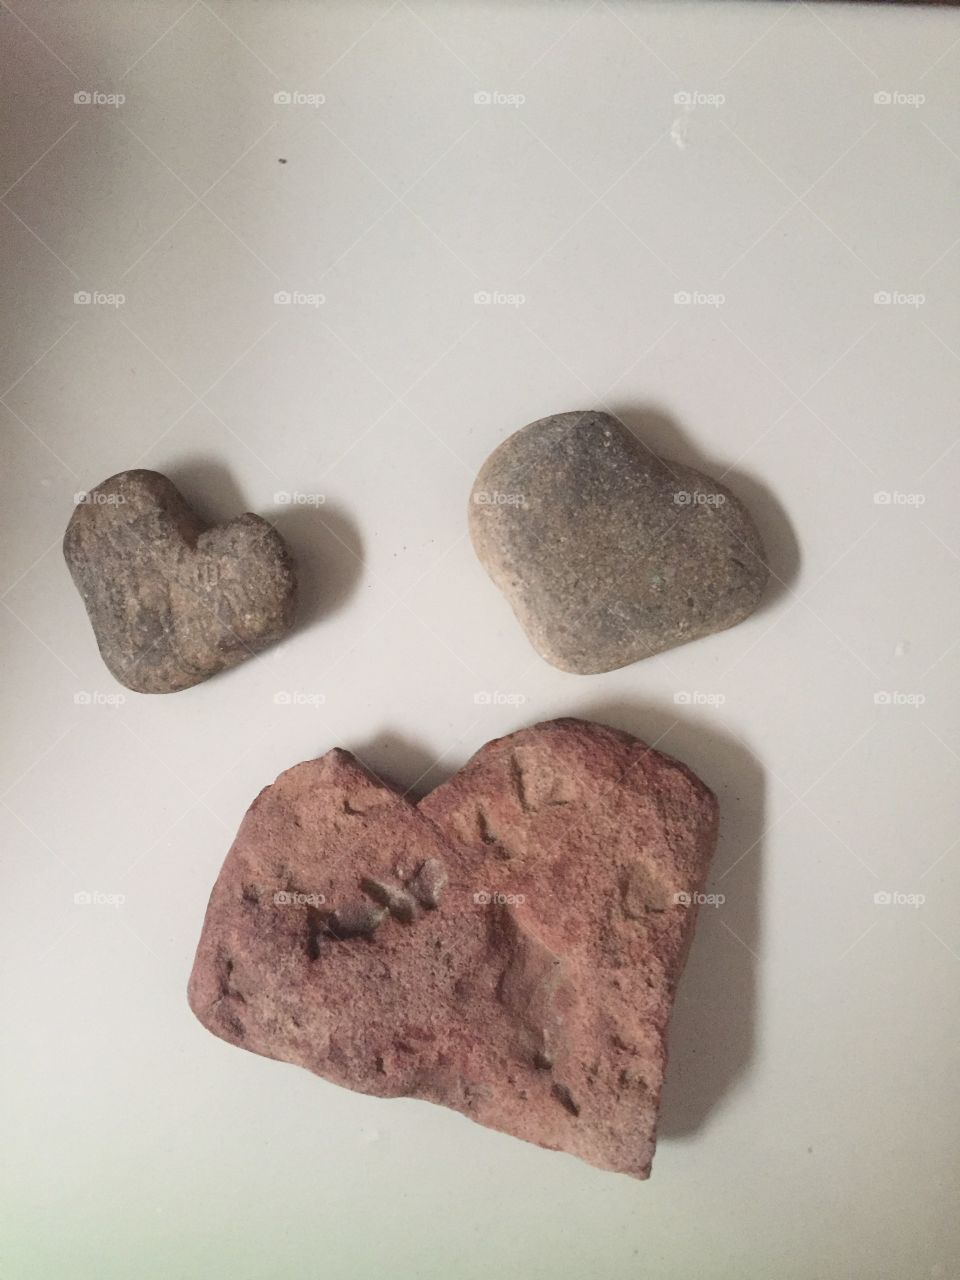 Heart rocks!